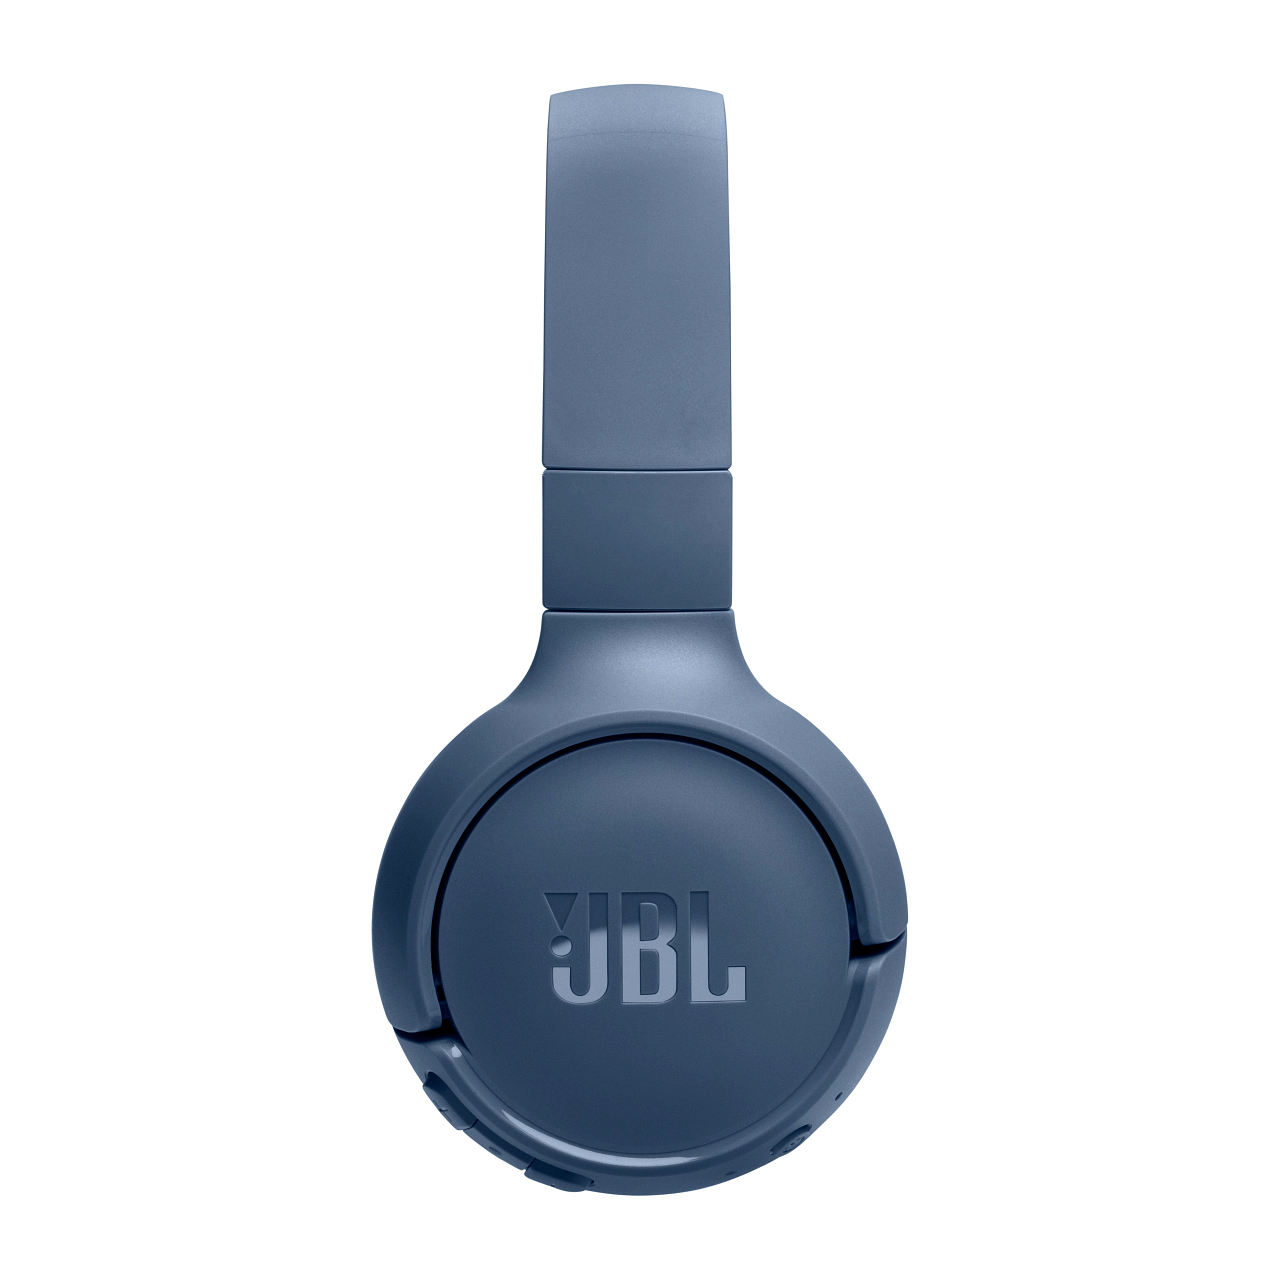 Blau Kopfhörer Tune JBL 520BT, Over-ear Bluetooth